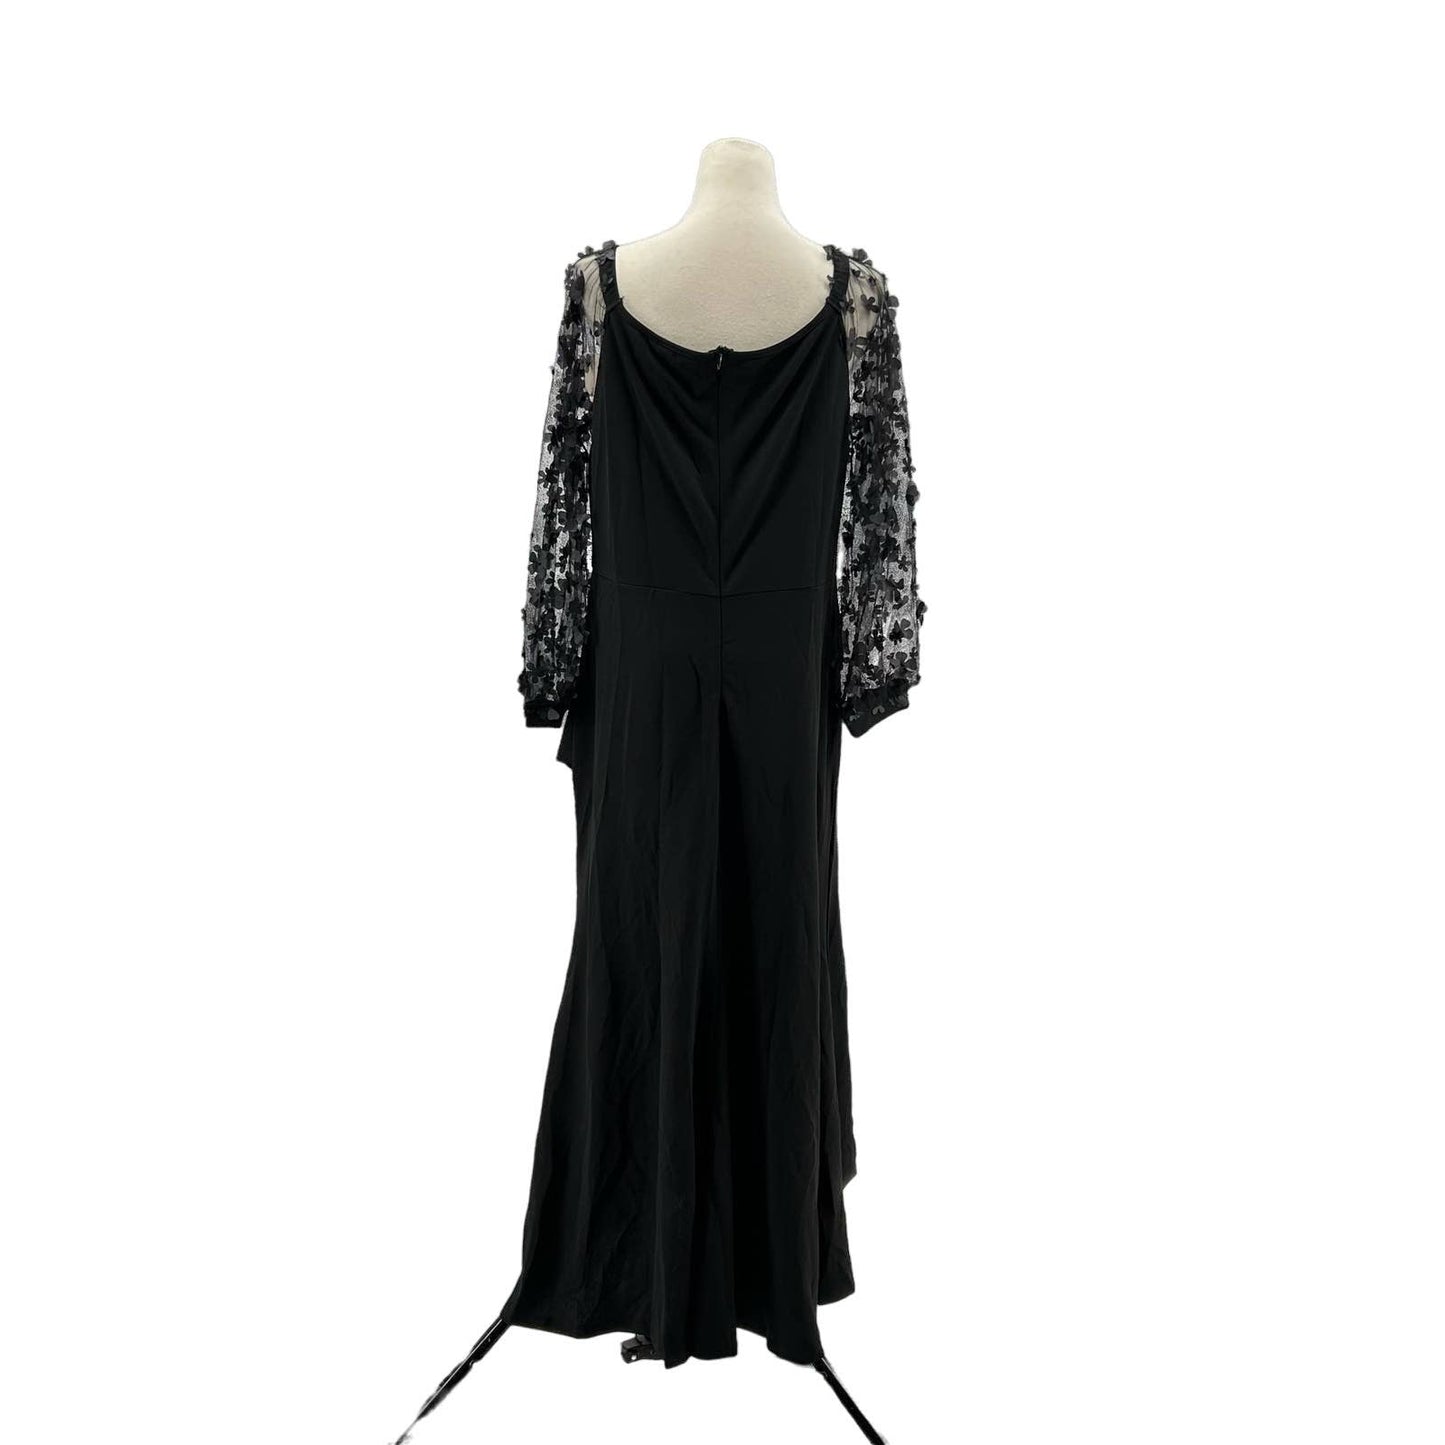 Off Shoulder Maxi Dress with Sheer Long Sleeves Black Front Cross "V" Split